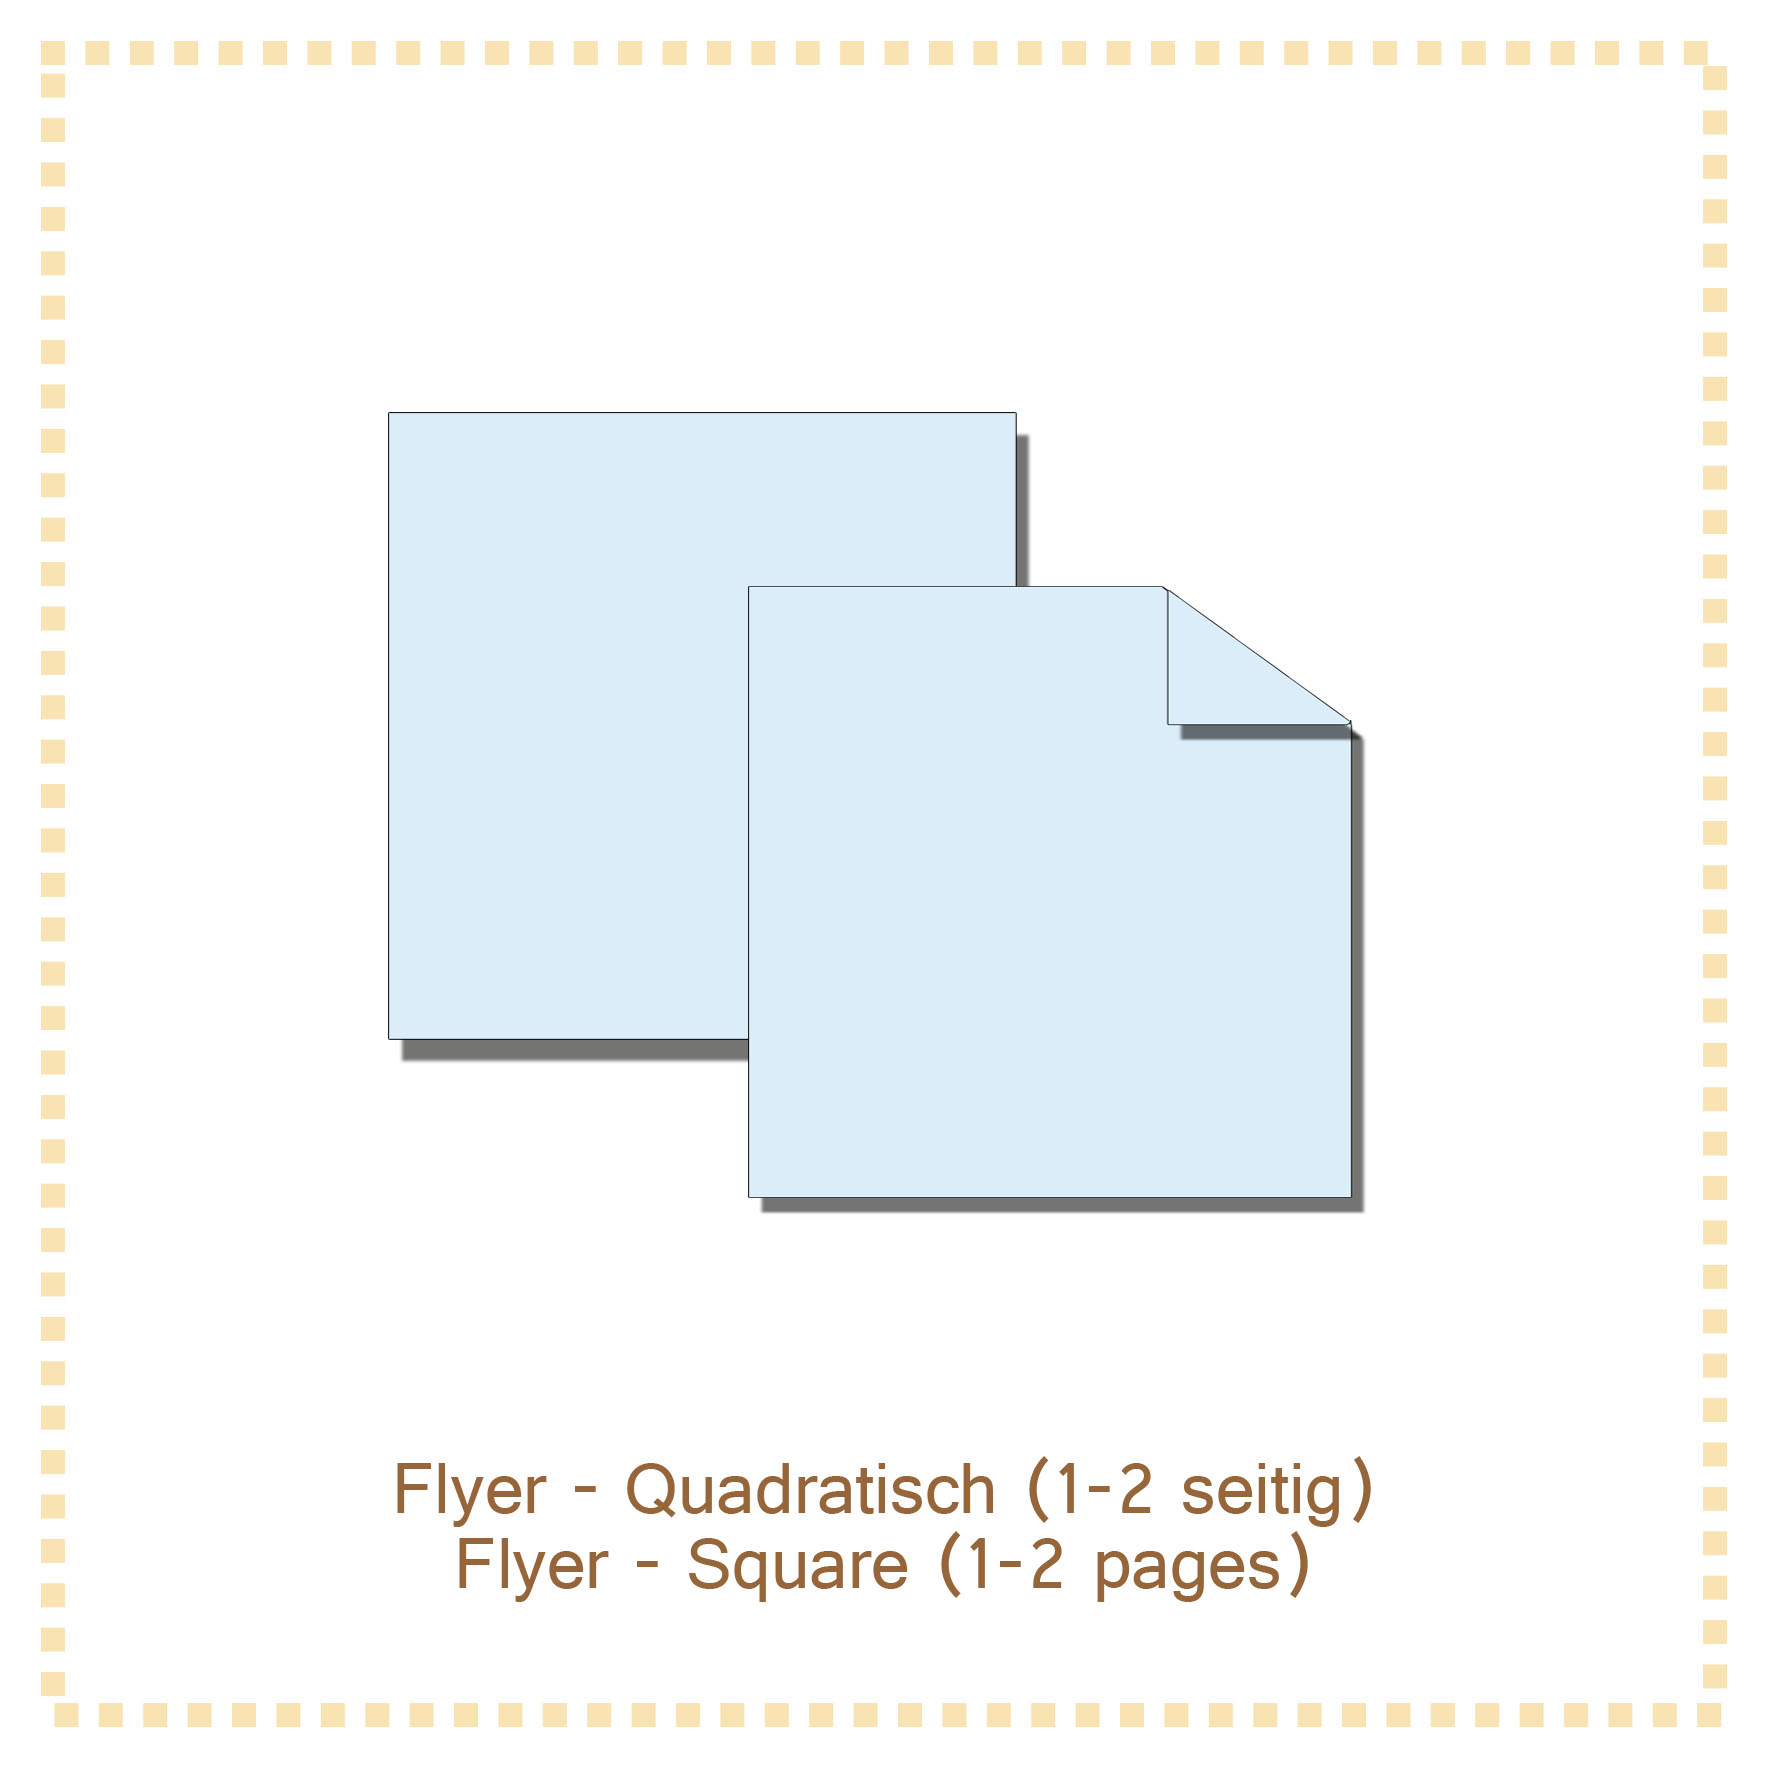 Flyer - Standardflyer - Quadratisch